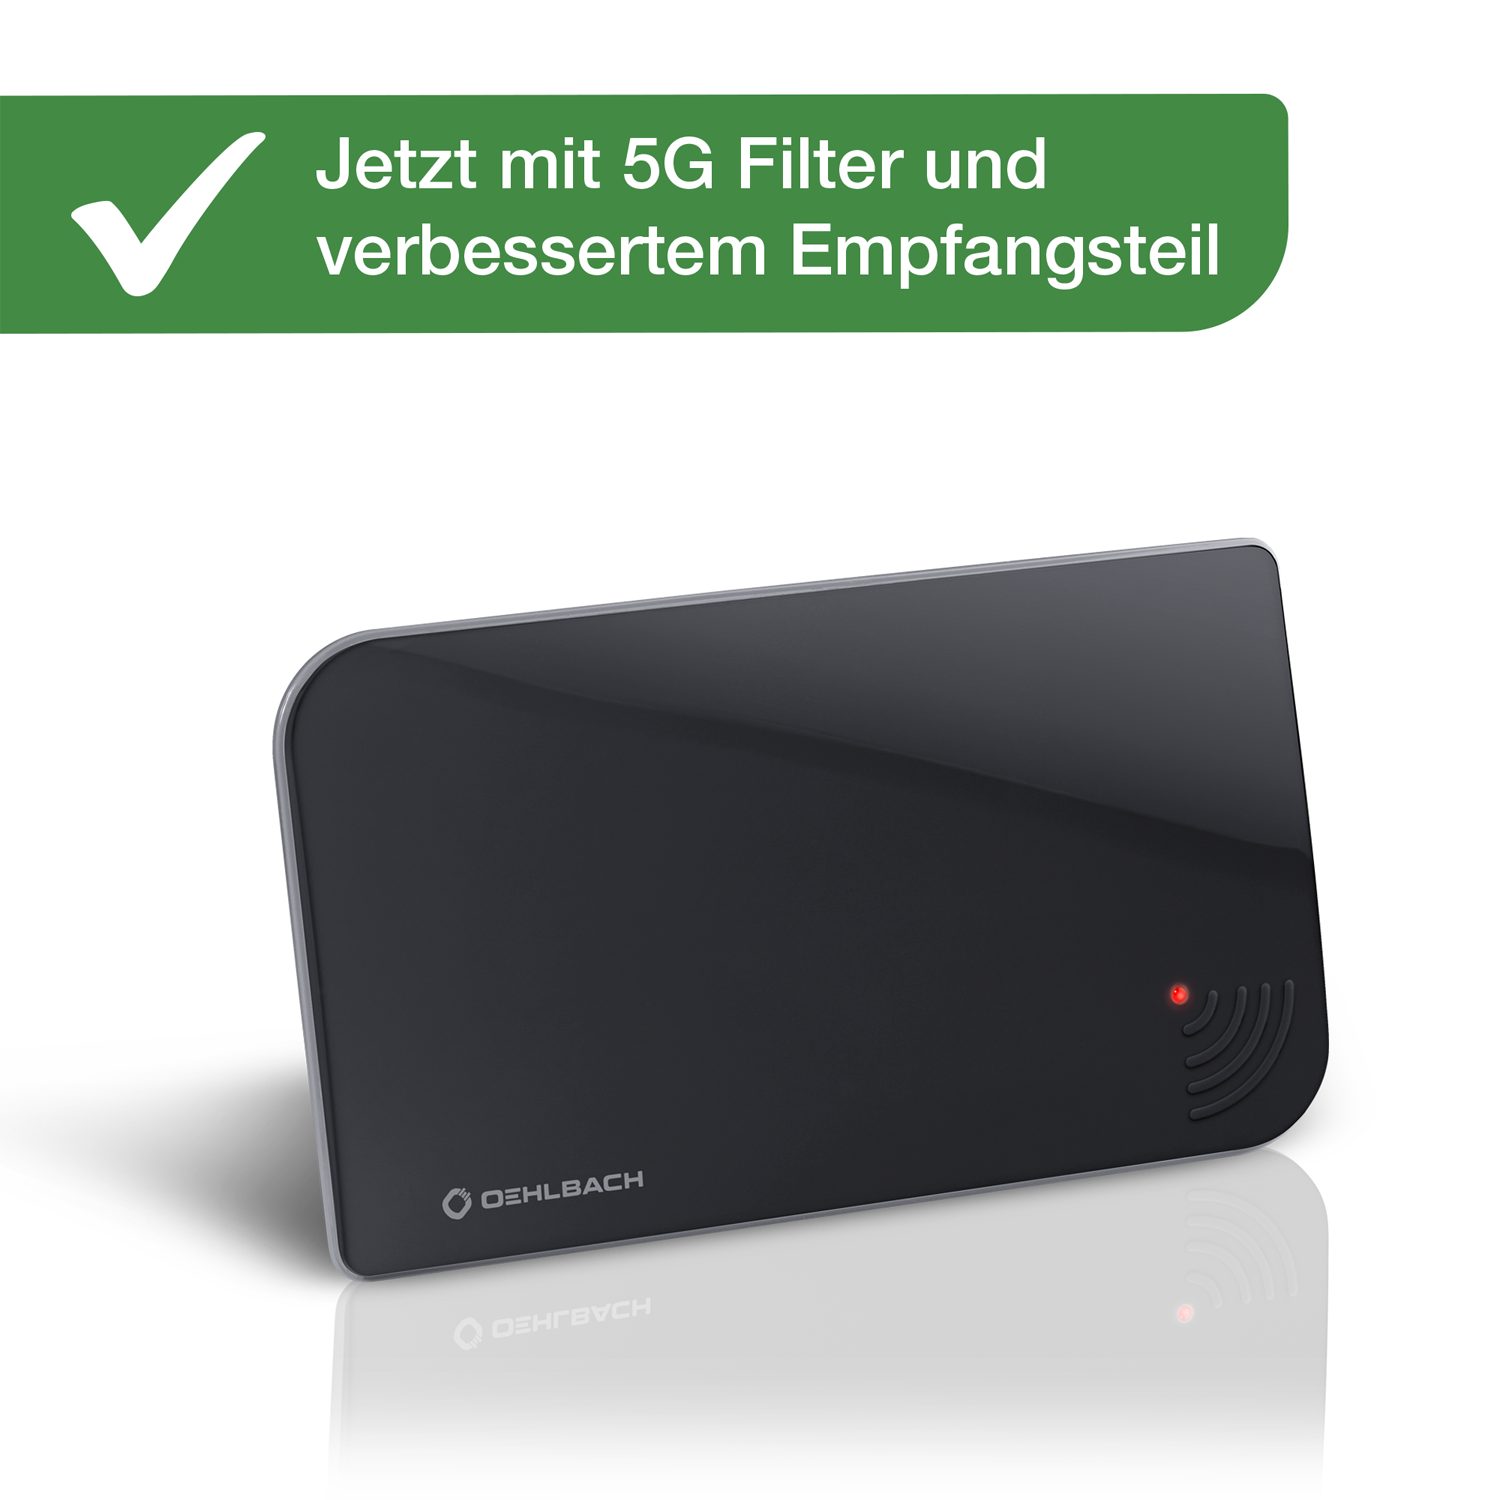 5G Schwarz Innenantenne Vision 5G Filter Zimmerantenne Oehlbach mit DVB-T2 Scope (DVB-T2) für